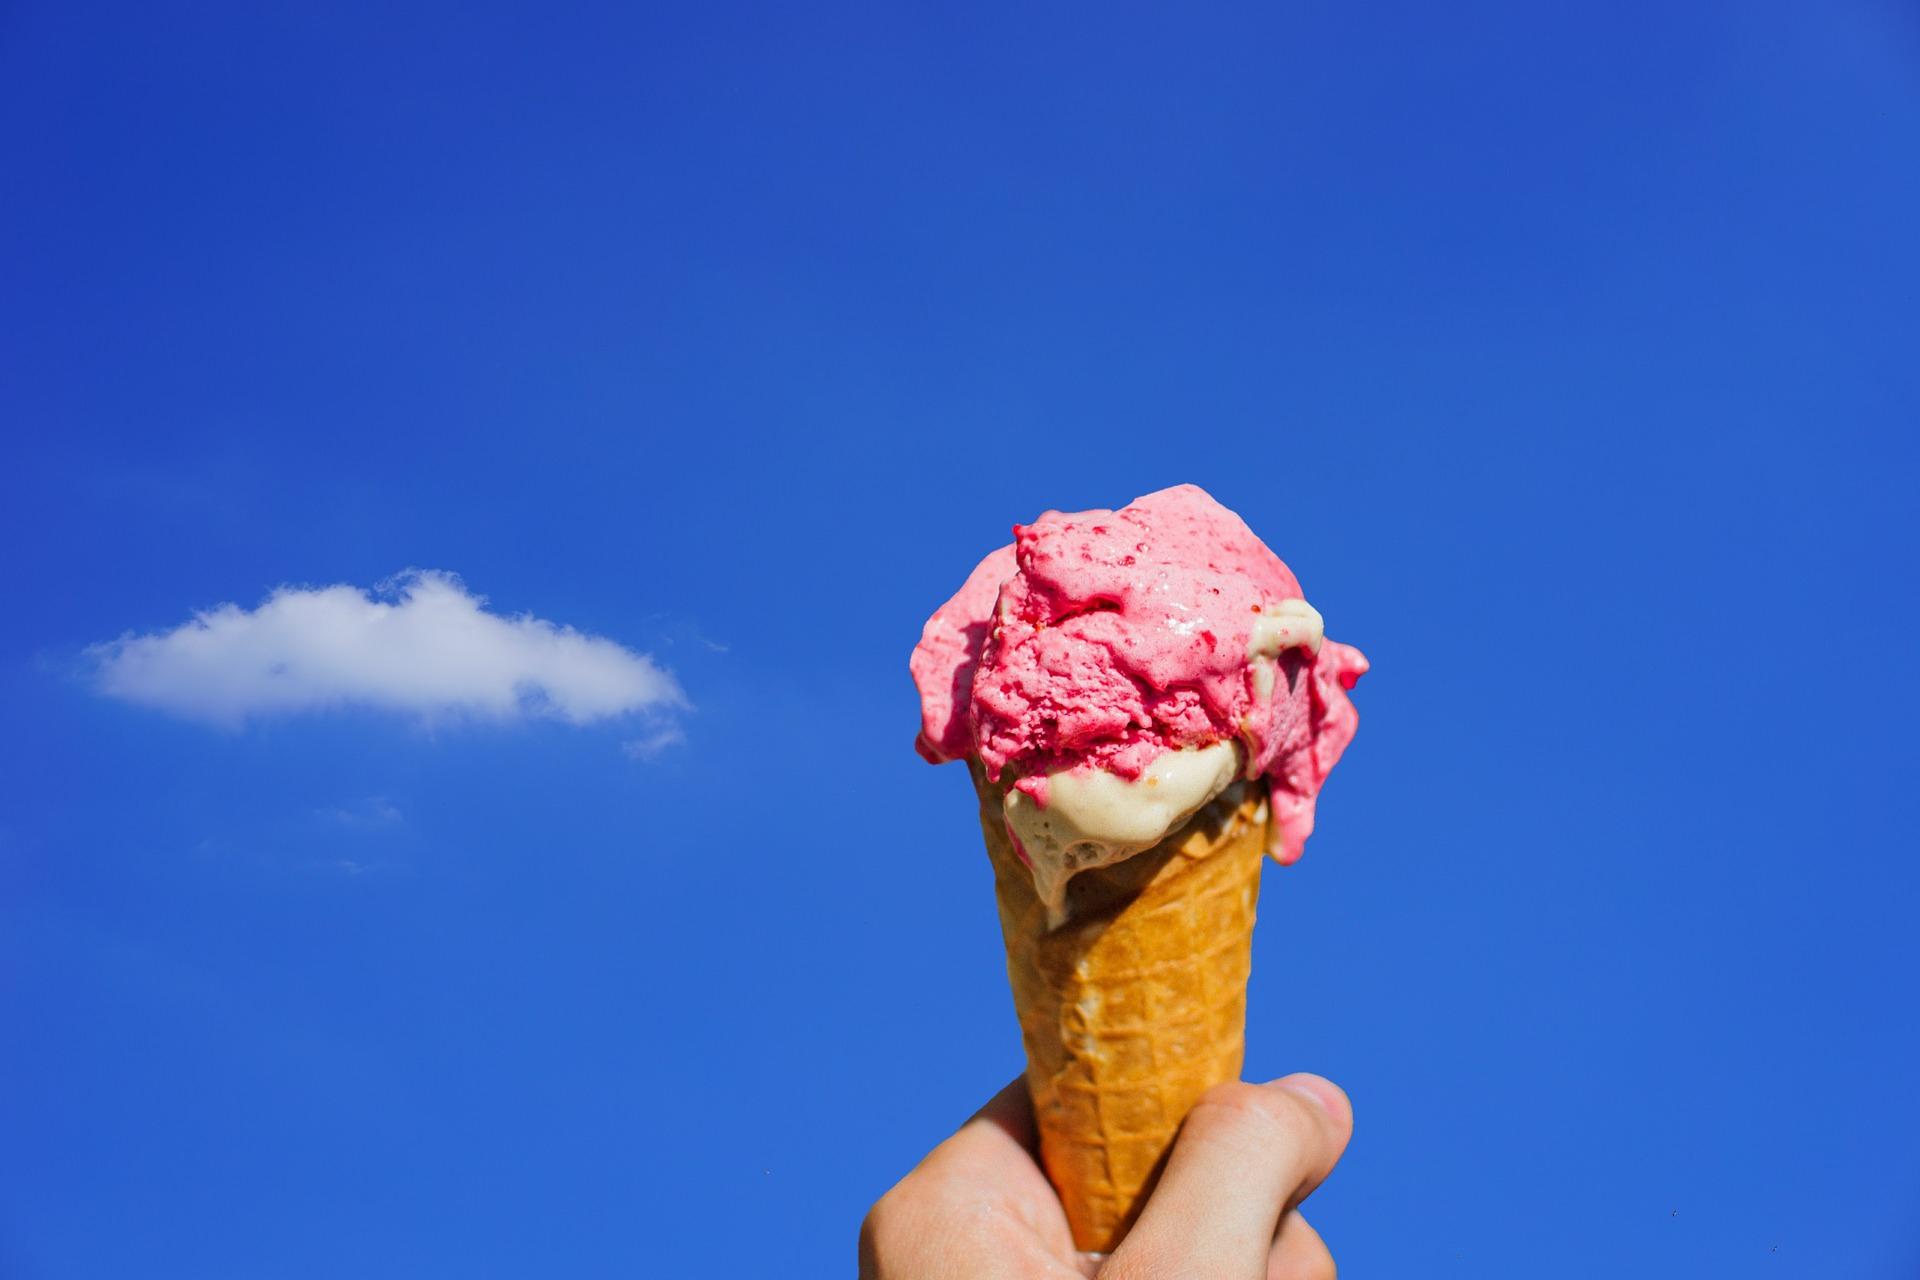 法国 冰淇淋 点心 - Pixabay上的免费照片 - Pixabay